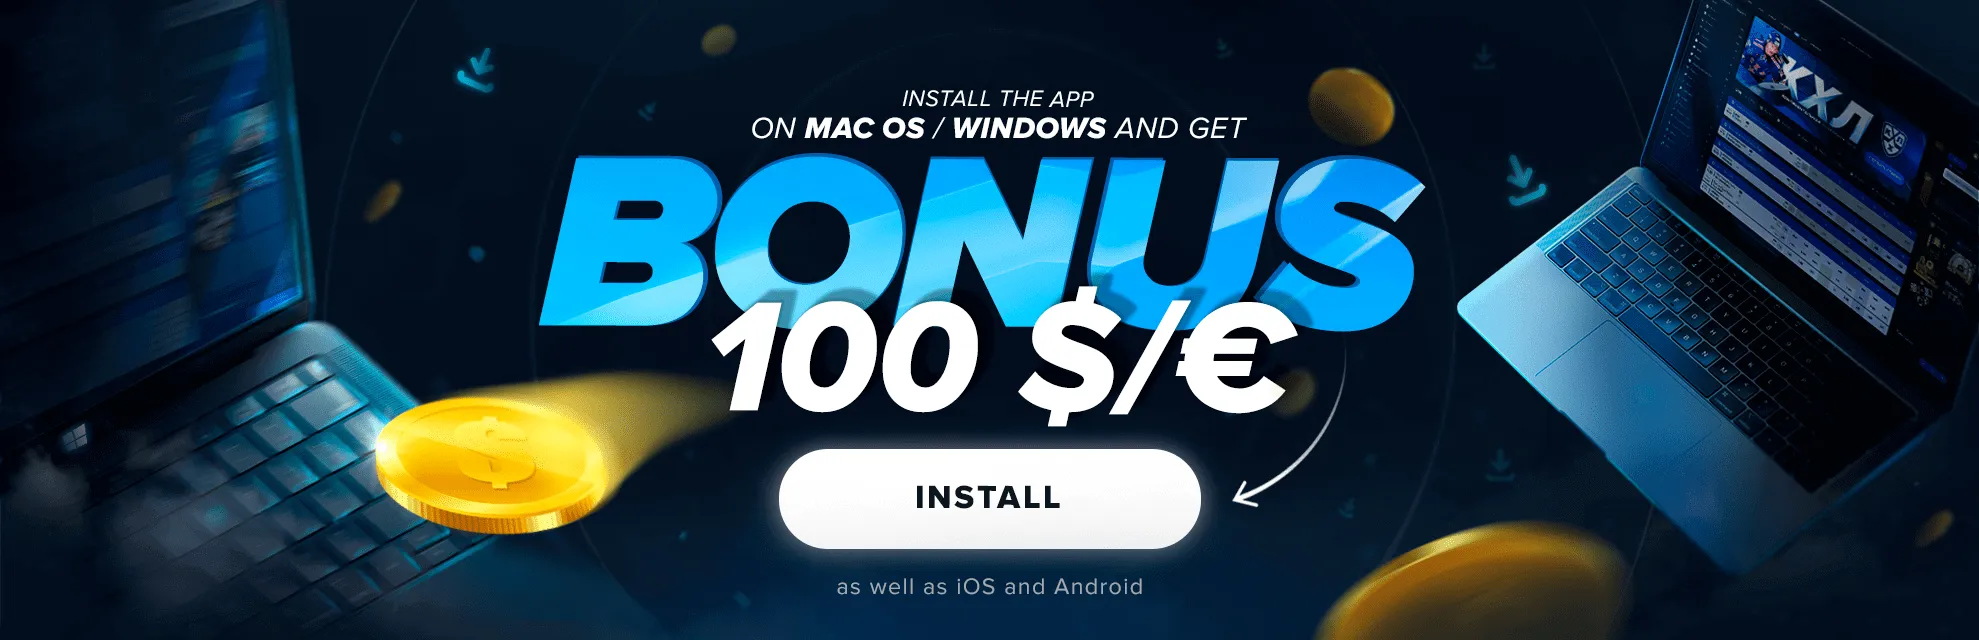 Mobile app install bonus